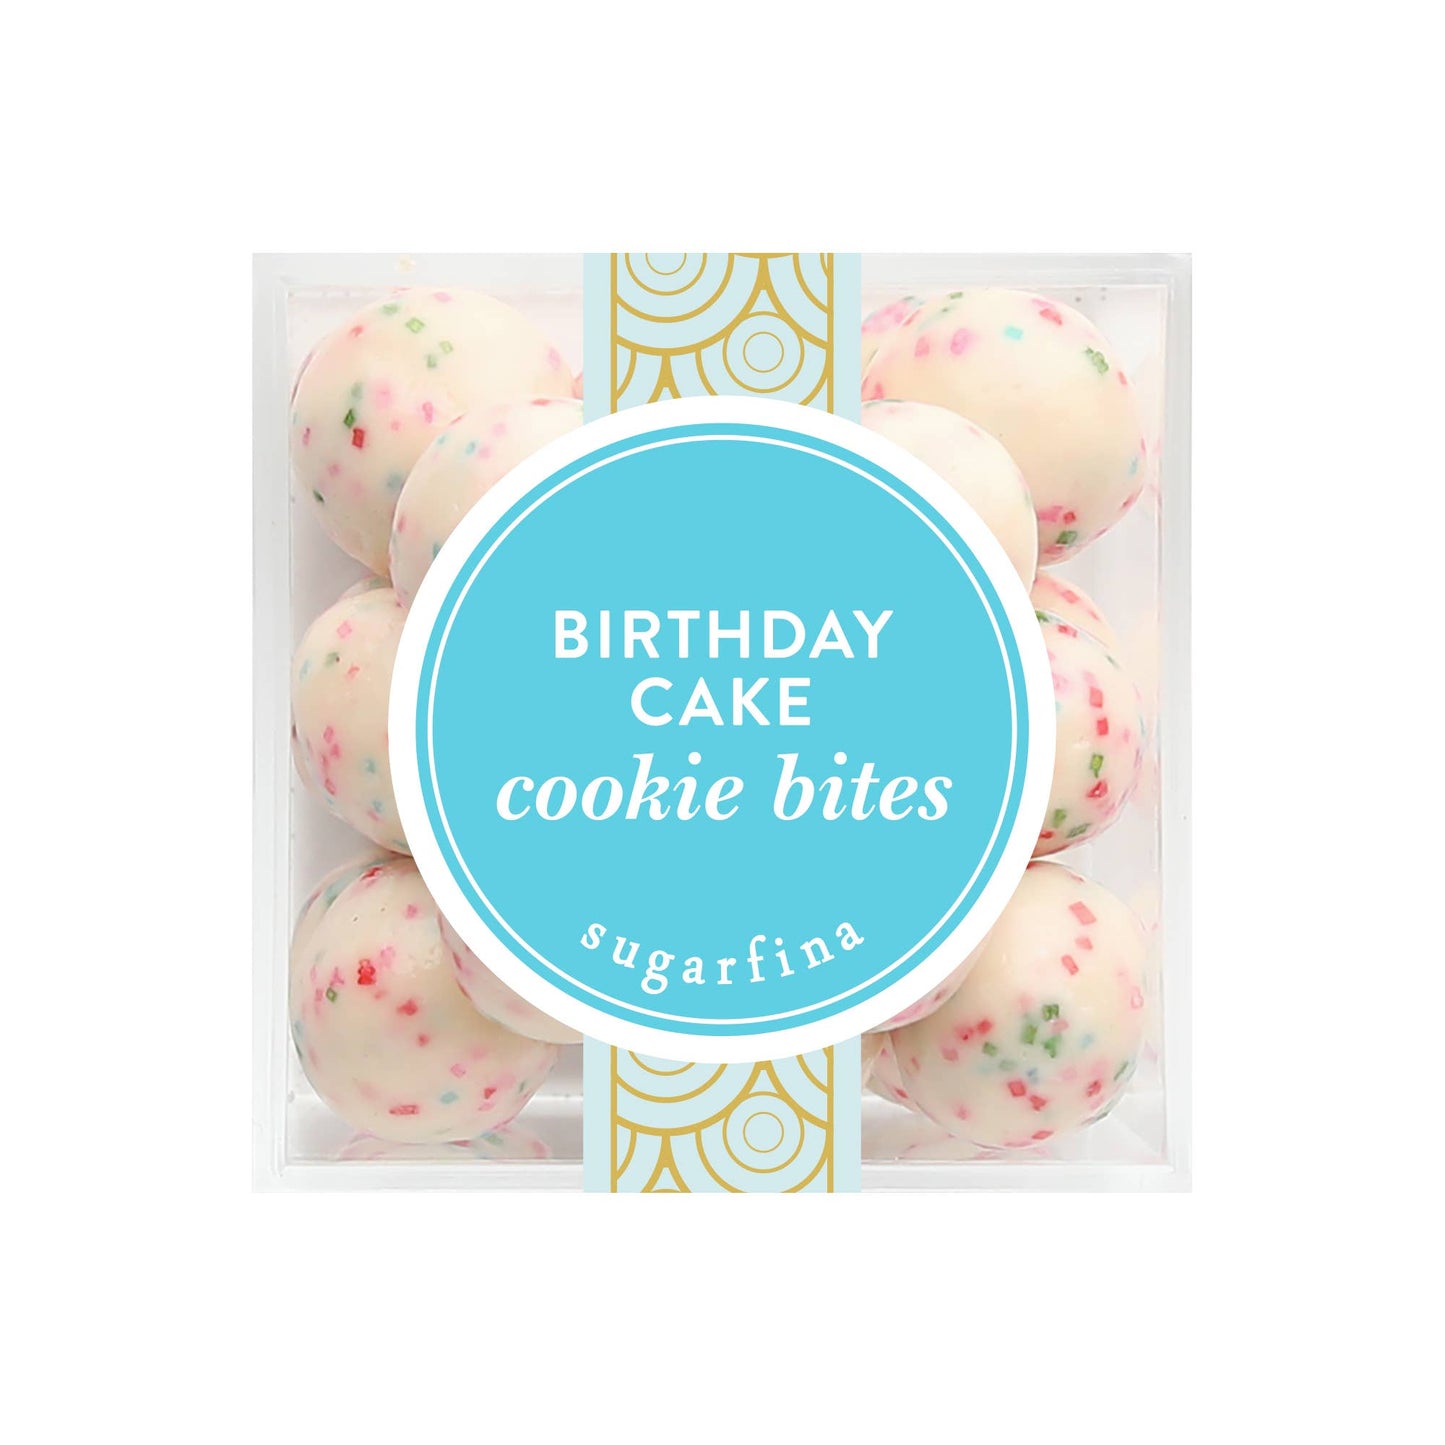 Sugarfina Birthday Cake Cookie Bites